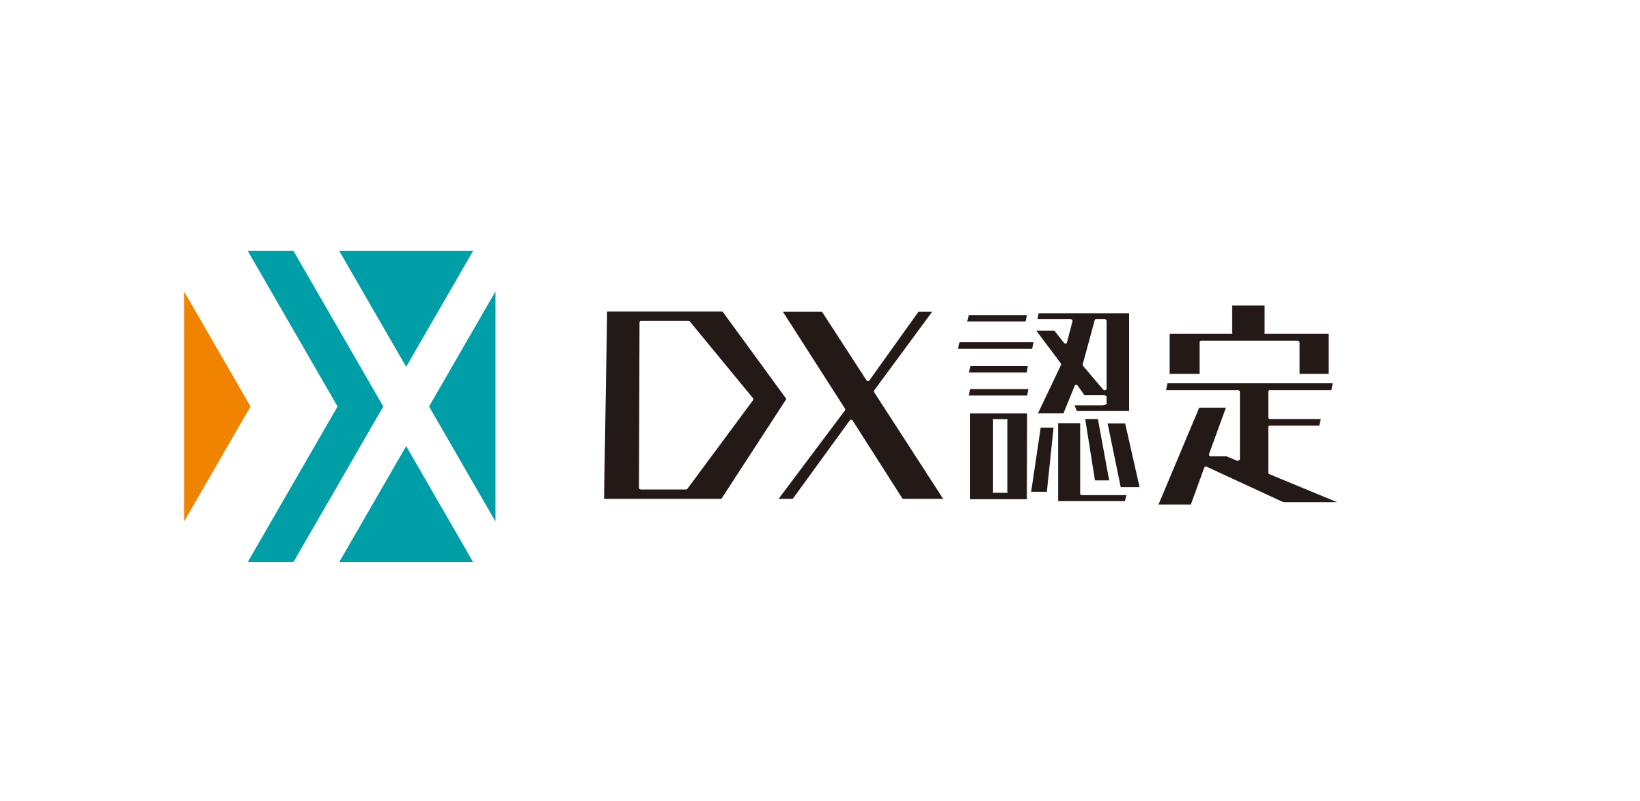 デジタルトランスフォーメーション（DX）の推進に向けて、DX認定を取得しました。